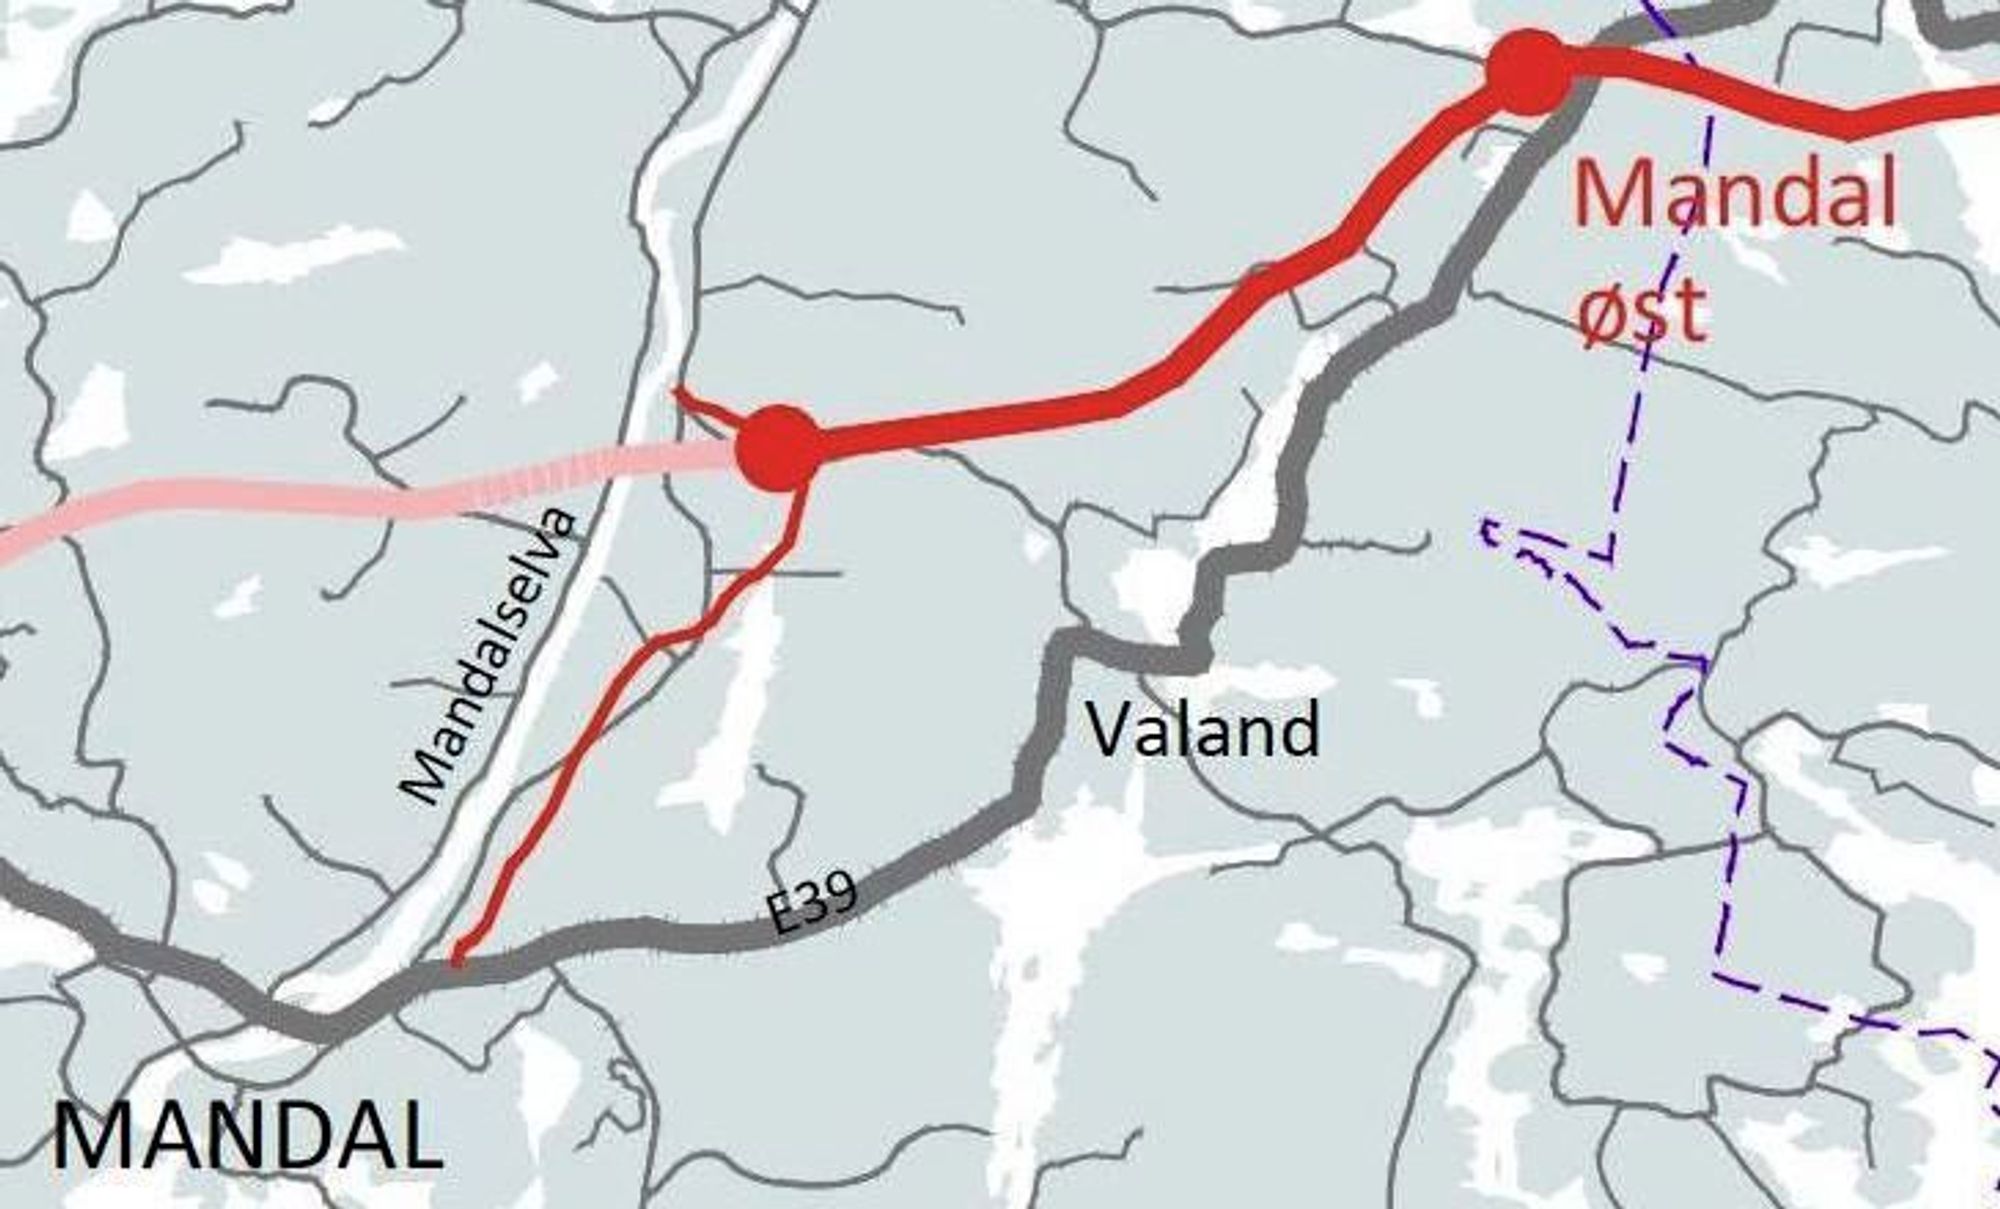 Den tykke røde linjen markerer framtidig E39. Den tynne røde linjen markerer   forbindelsesvegen mellom Mandal sentrum og E39. Den blir hovedveg inntil den permanente E39 er ført videre vestover.